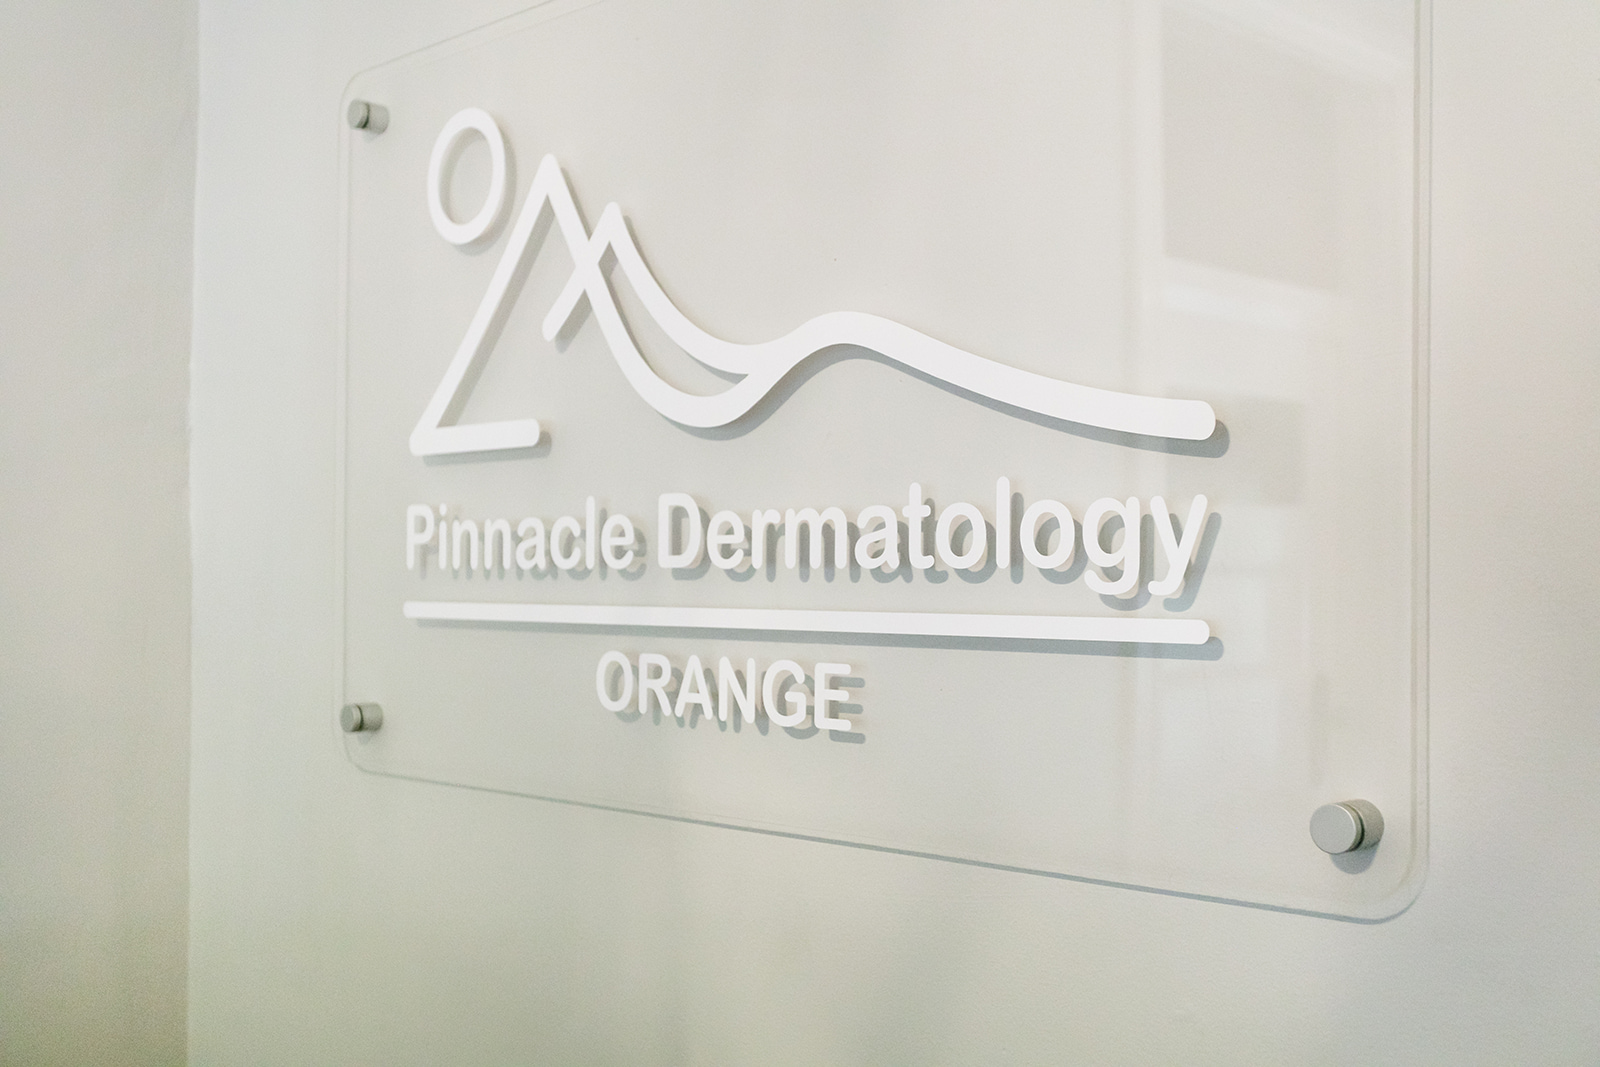 Pinnacle Dermatology